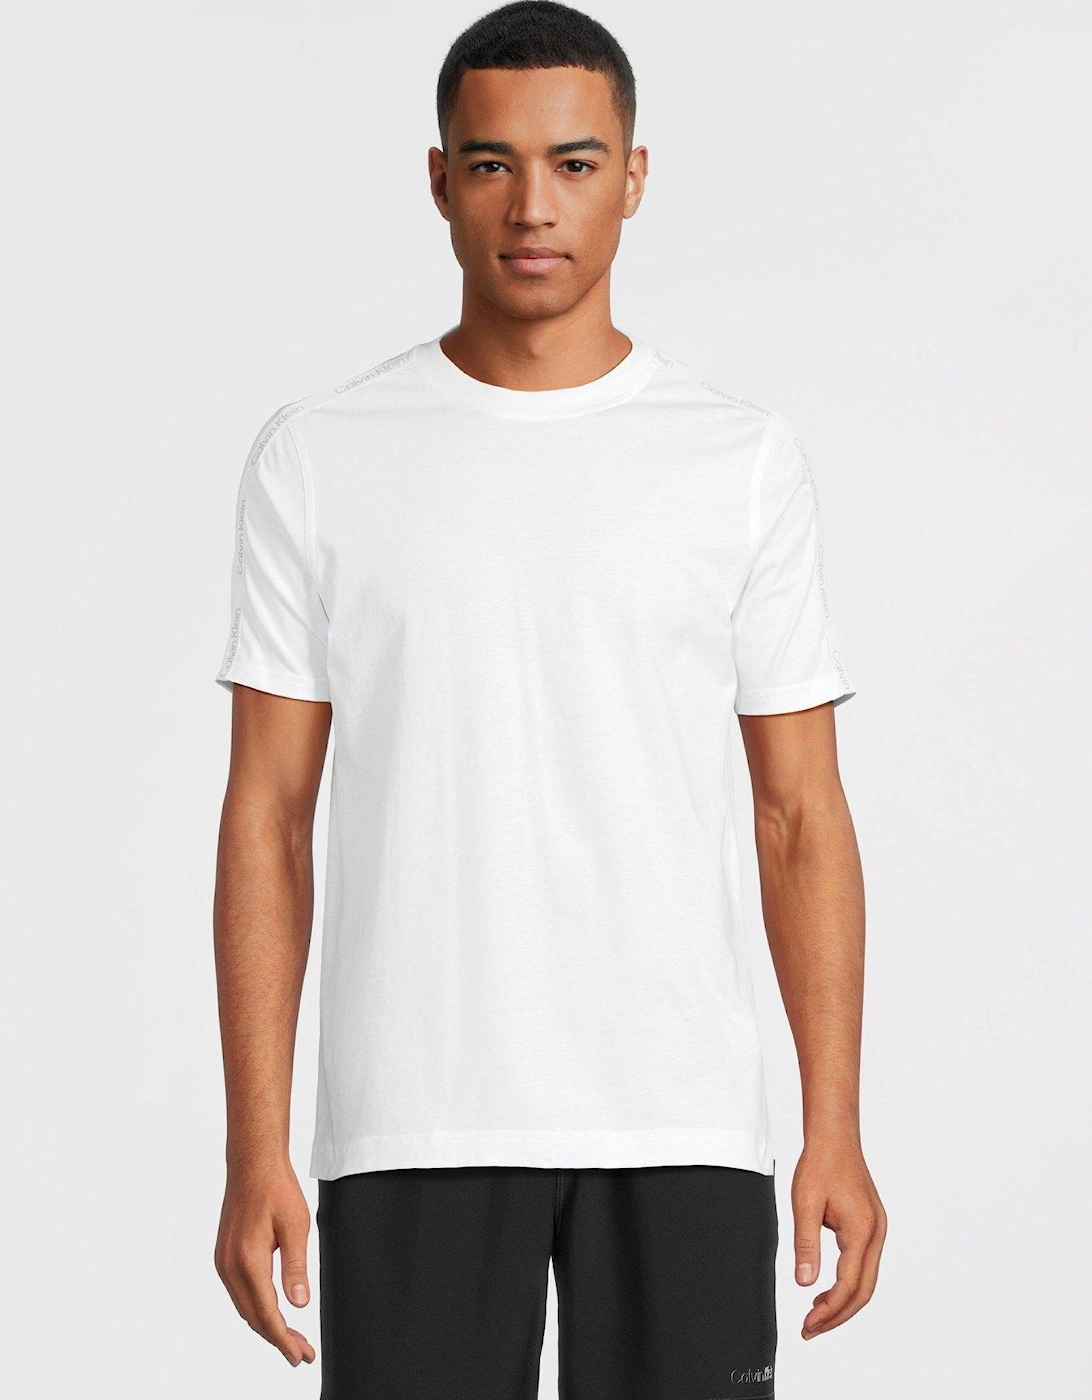 CK Sport Tape Logo Short Sleeve T-shirt - White, 3 of 2